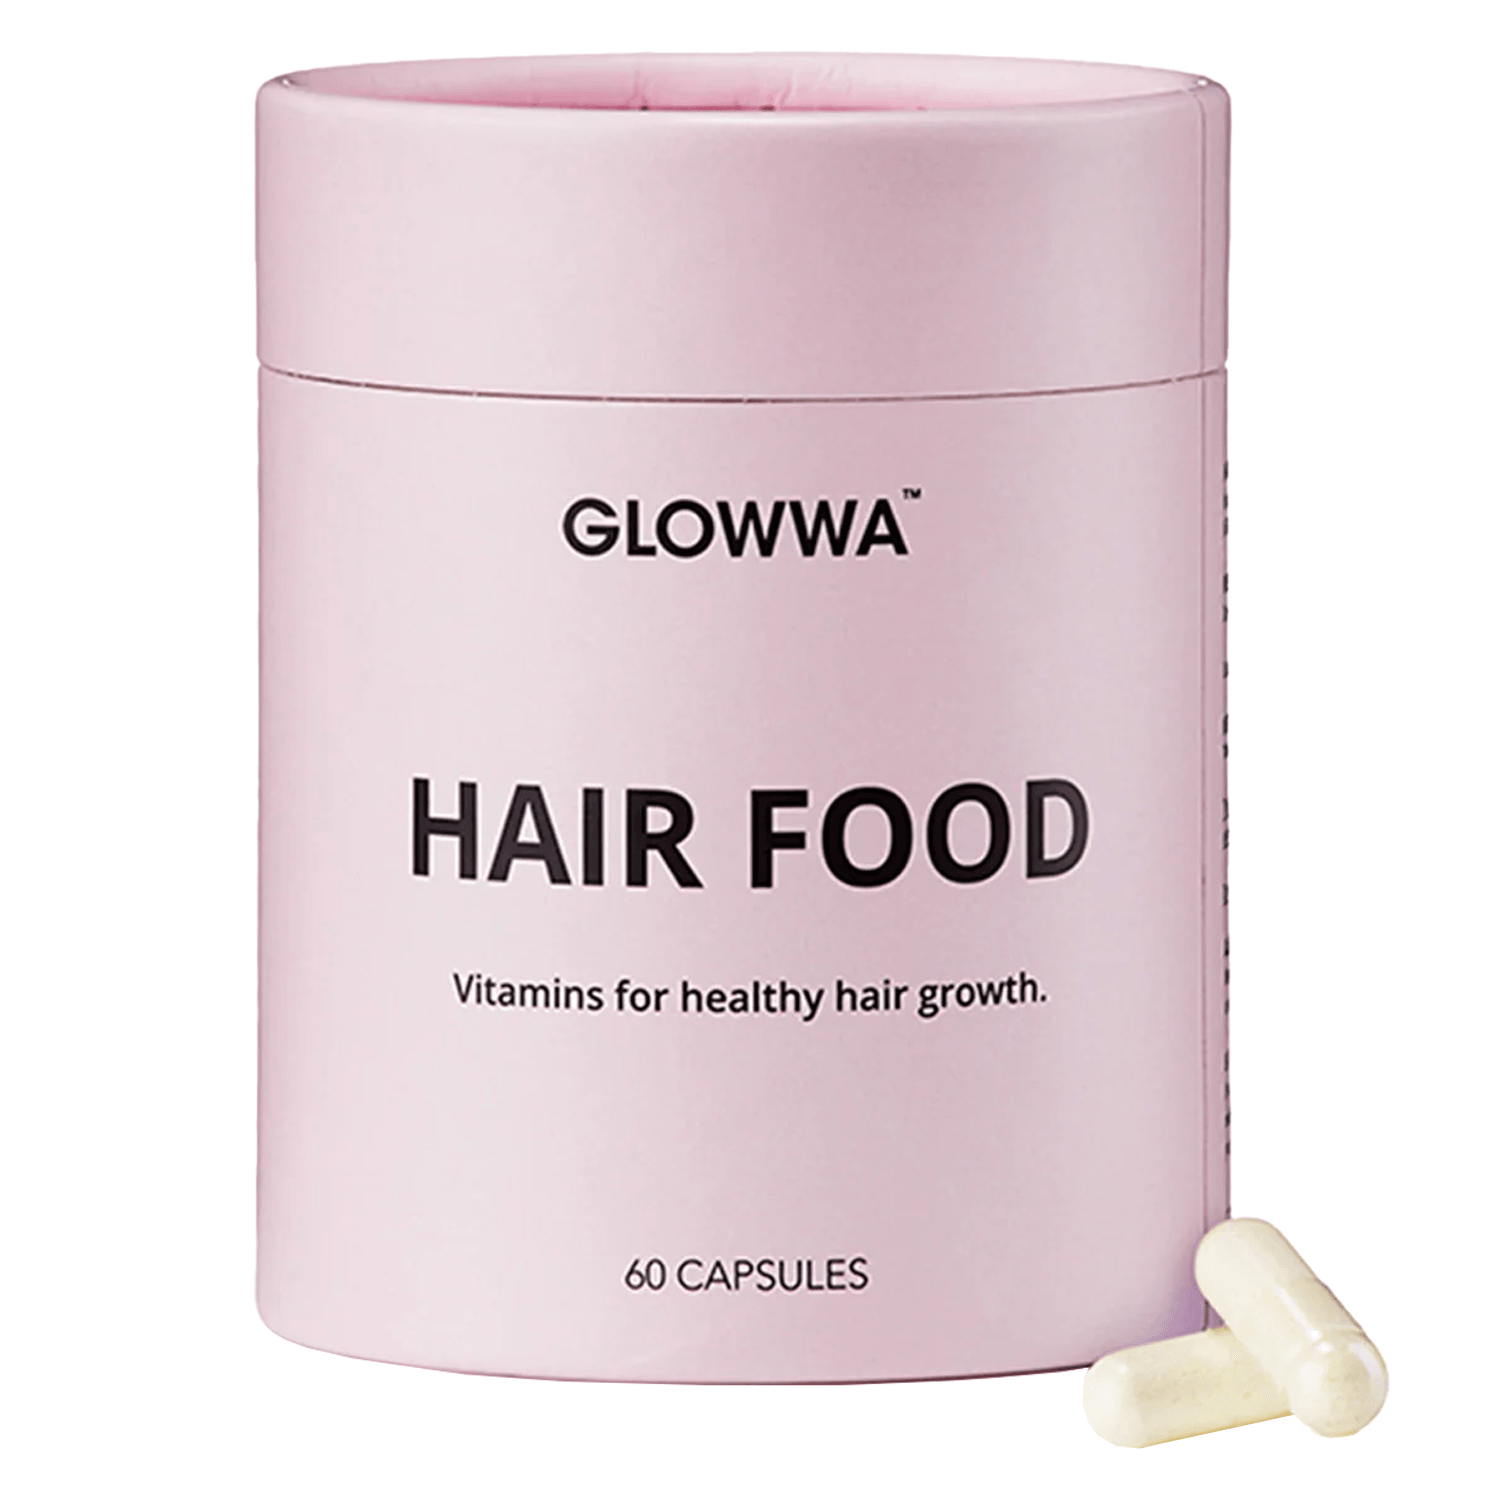 Produktbild von GLOWWA - Hair Food